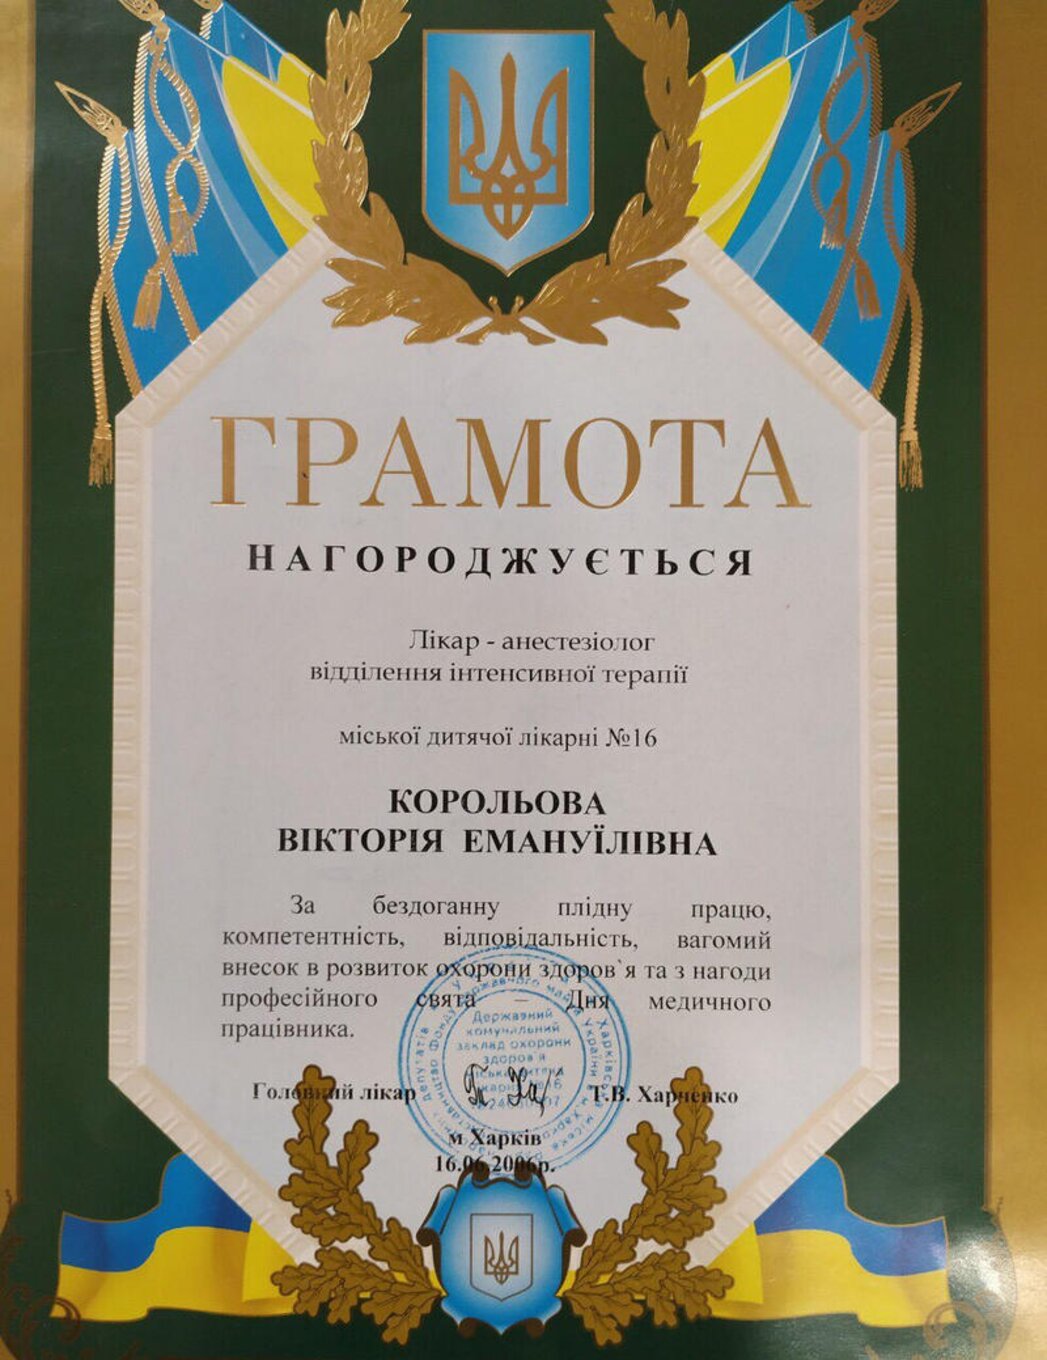 certificates/korolova-viktoriya-emanuyilivna/hemomedika-cert-koroleva-01.jpg